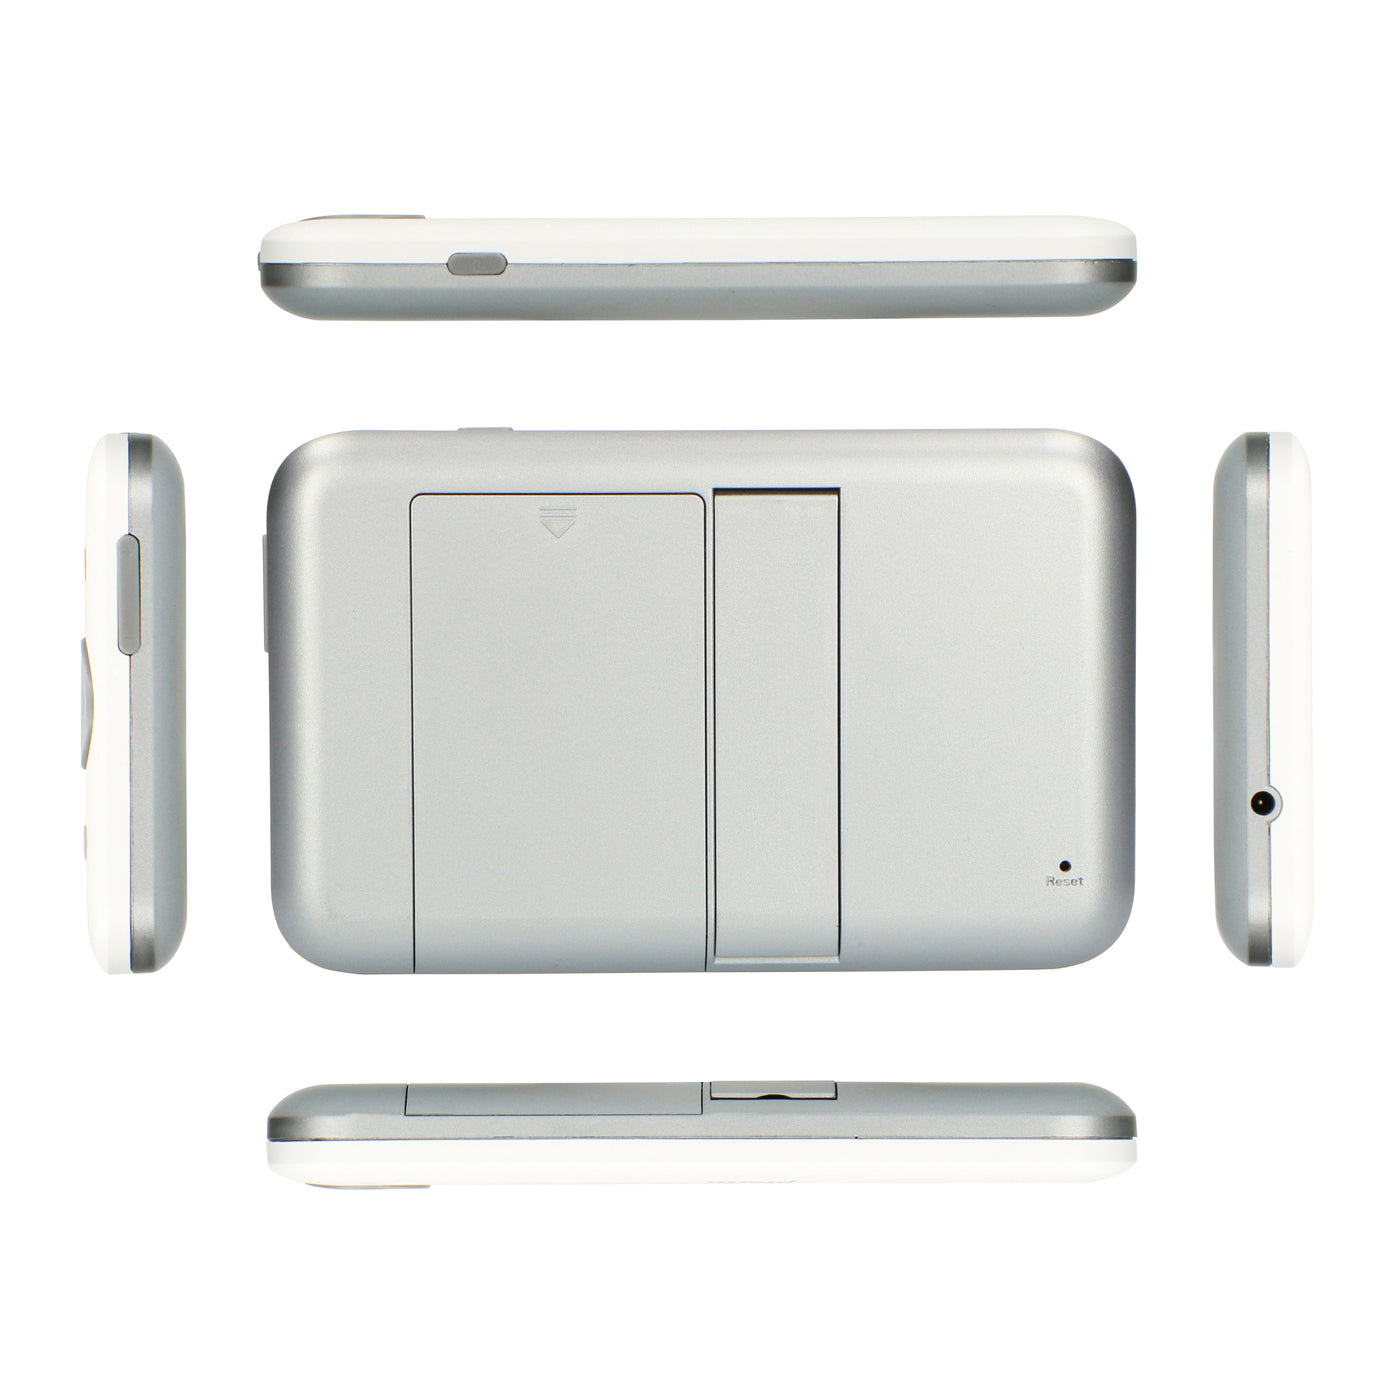 Alecto DVM-140 - Babyphone mit Kamera und 4.3" Farbdisplay, Weiß